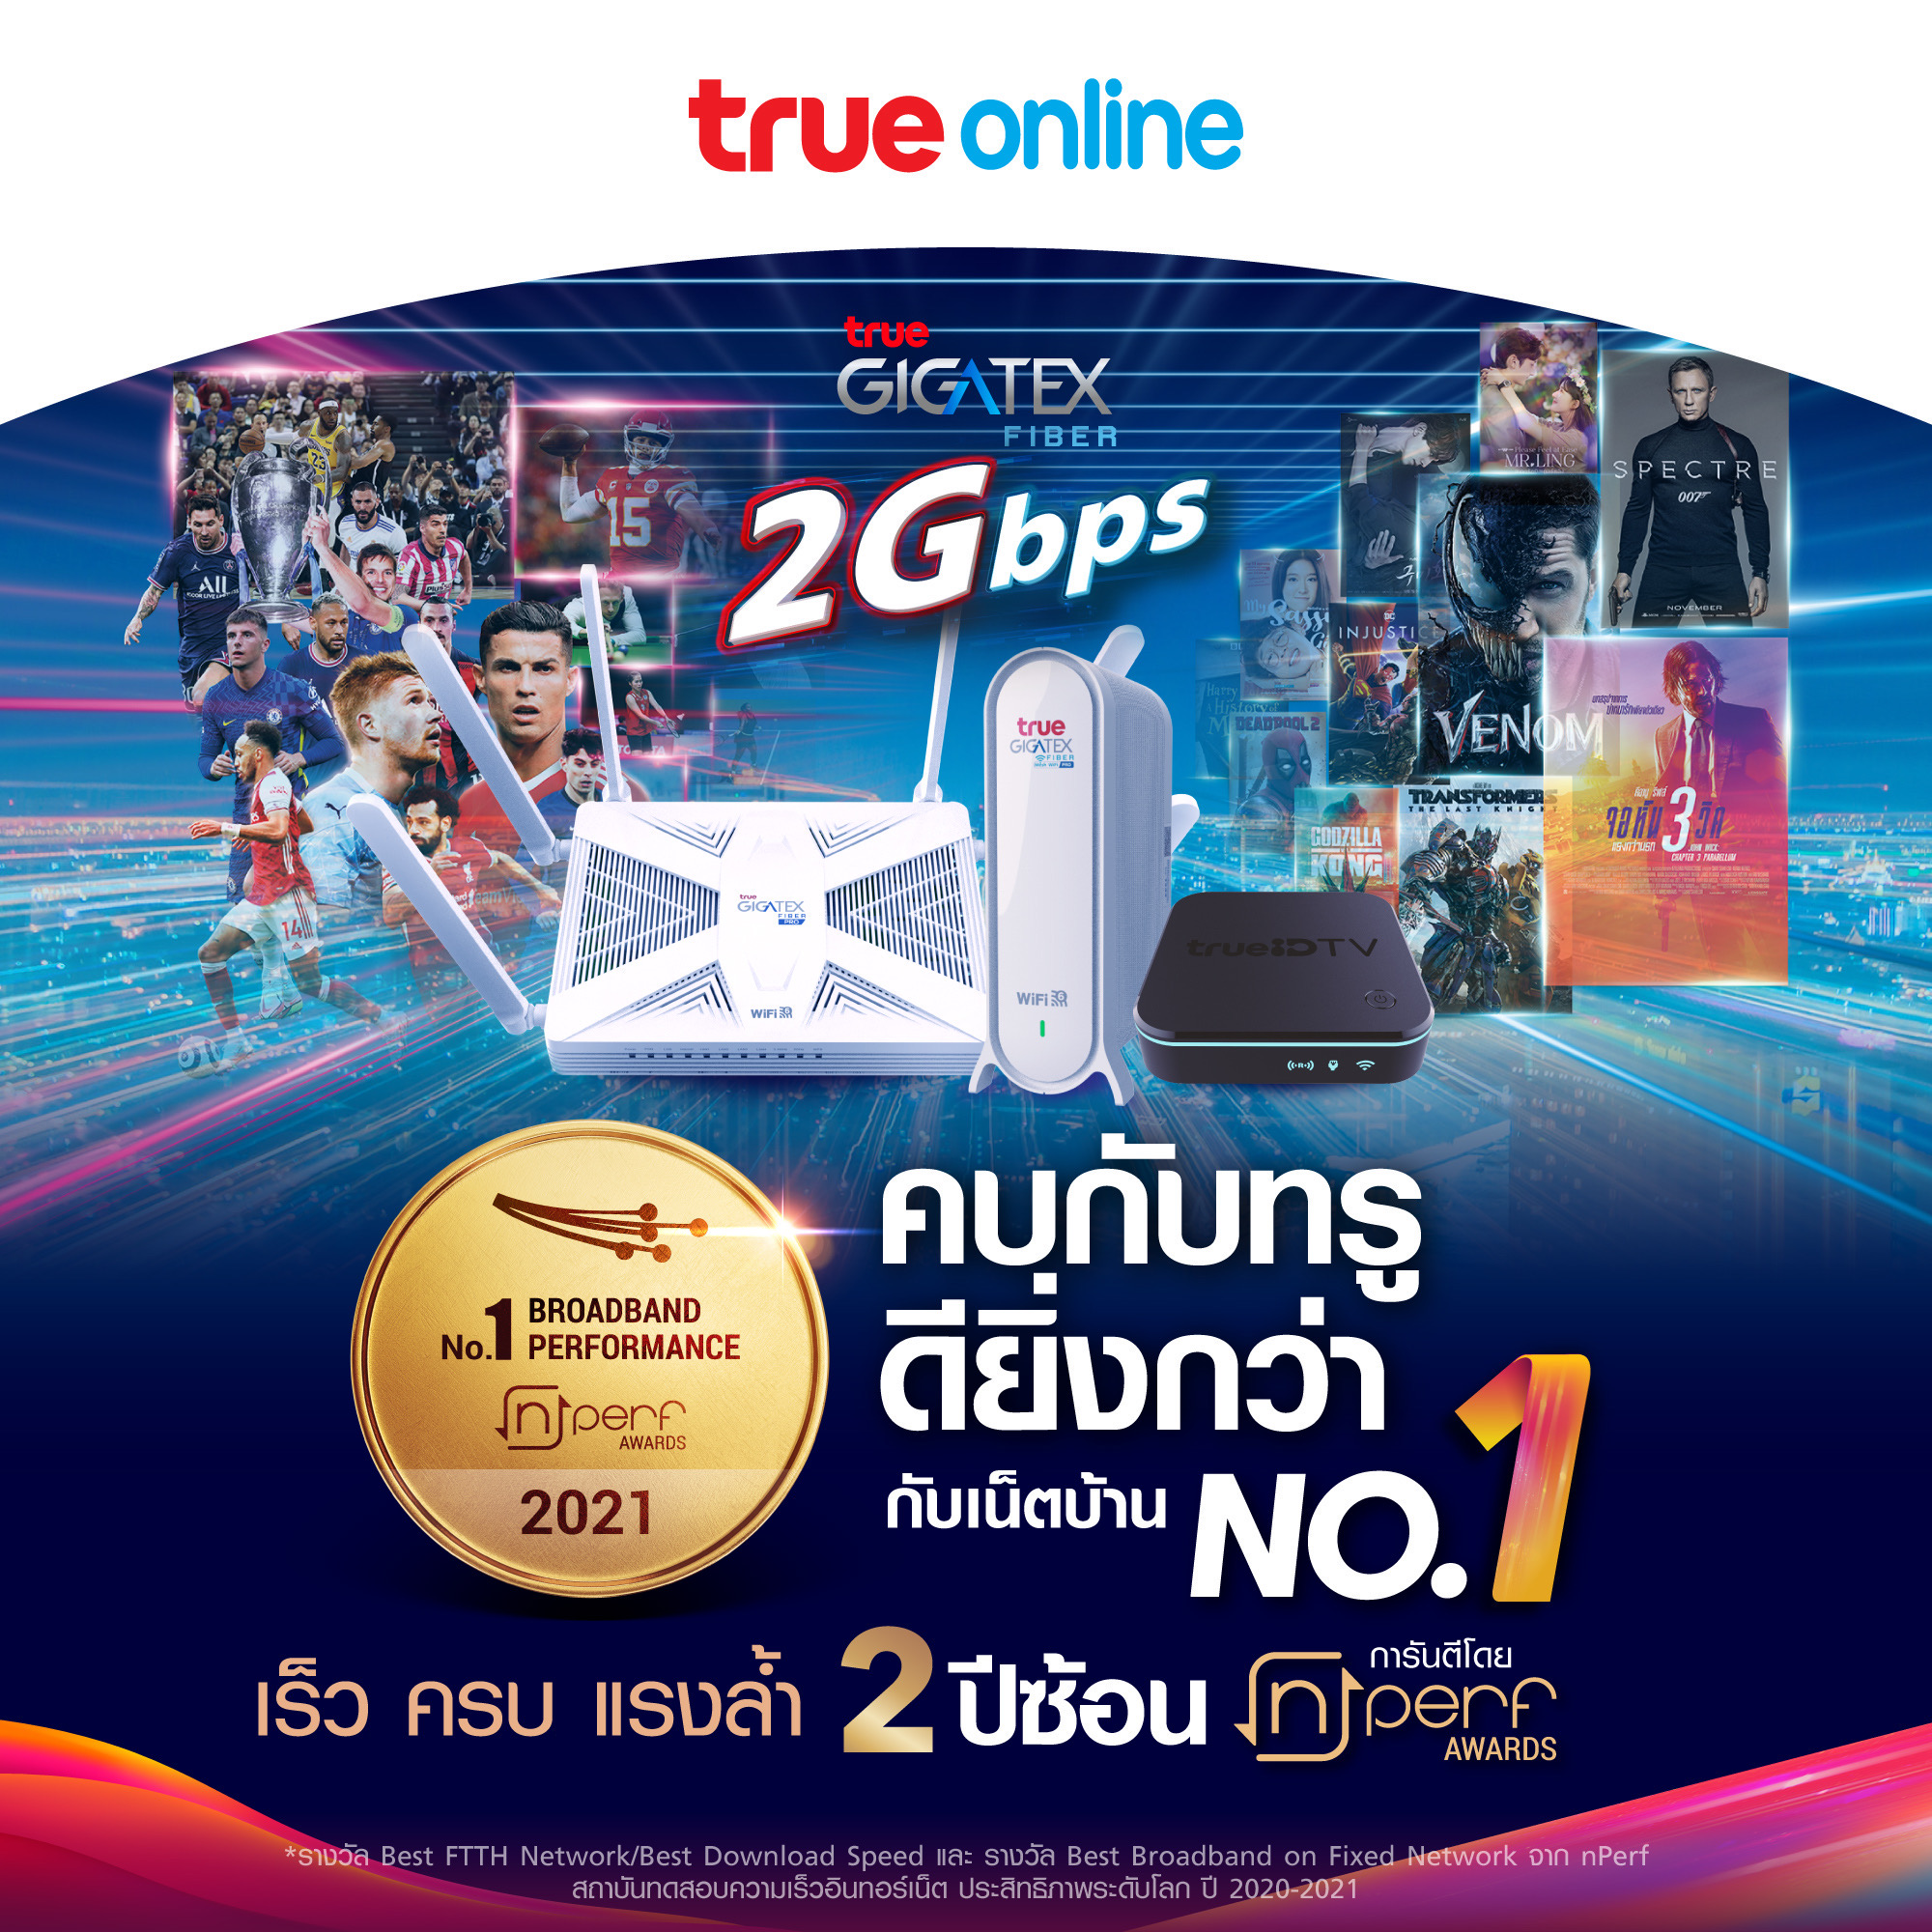 ทรูออนไลน์ คว้ารางวัลเน็ตบ้านอันดับหนึ่งในไทย 2 ปีซ้อน ทั้ง “บรอดแบรนด์ดีที่สุดในไทย” และ “ไฟเบอร์ดีที่สุด” ประจำปี 2564 จาก nPerf  เผยคะแนนความเร็วอัปโหลดสูงสุด และค่าความหน่วงต่ำดีที่สุด 